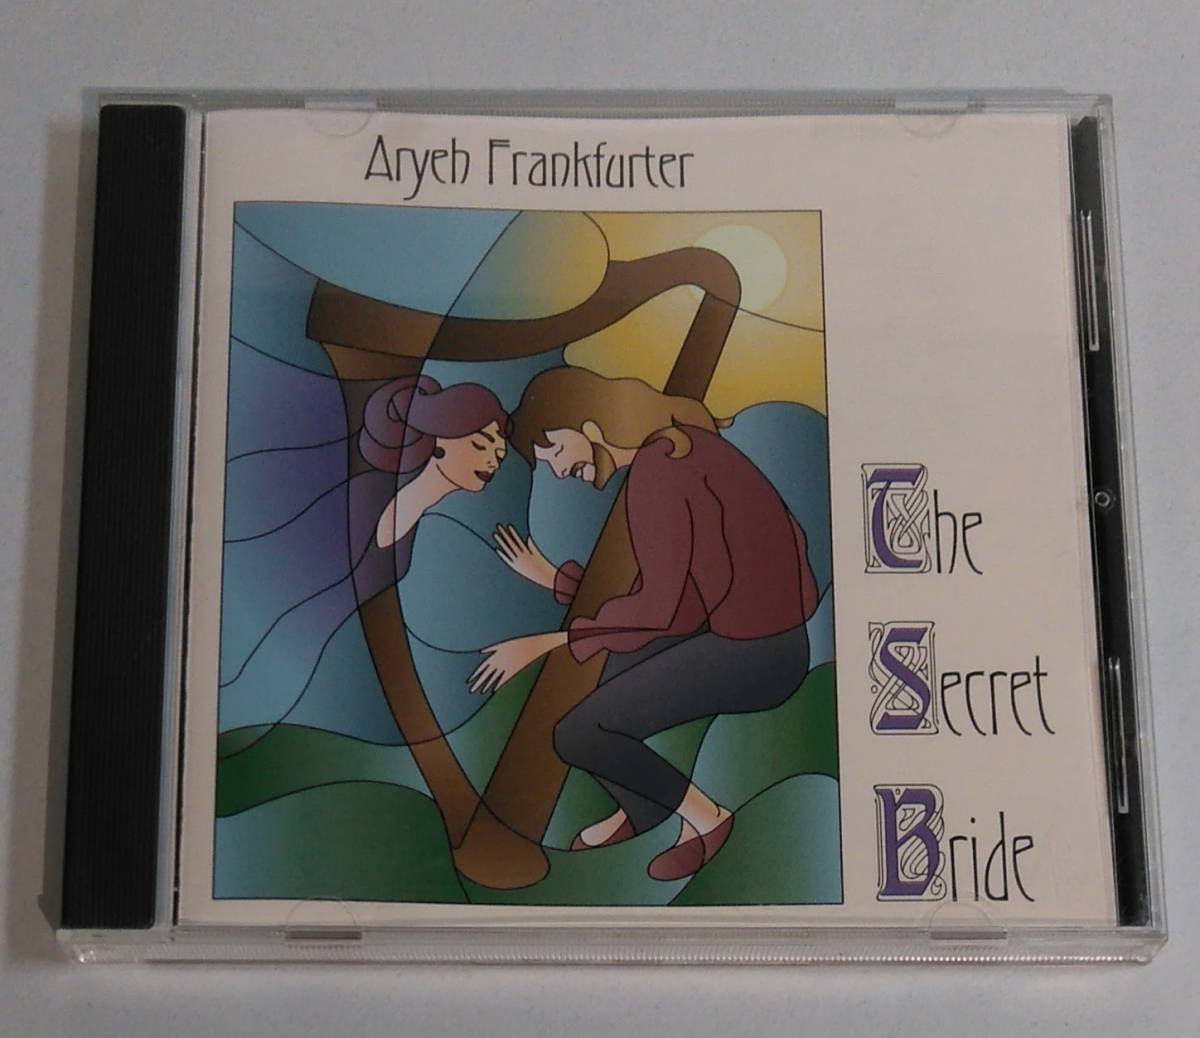 CD / Aryeh Frankfurter / The Secret Bride / Celtic harp / folk harp / 30041_画像1